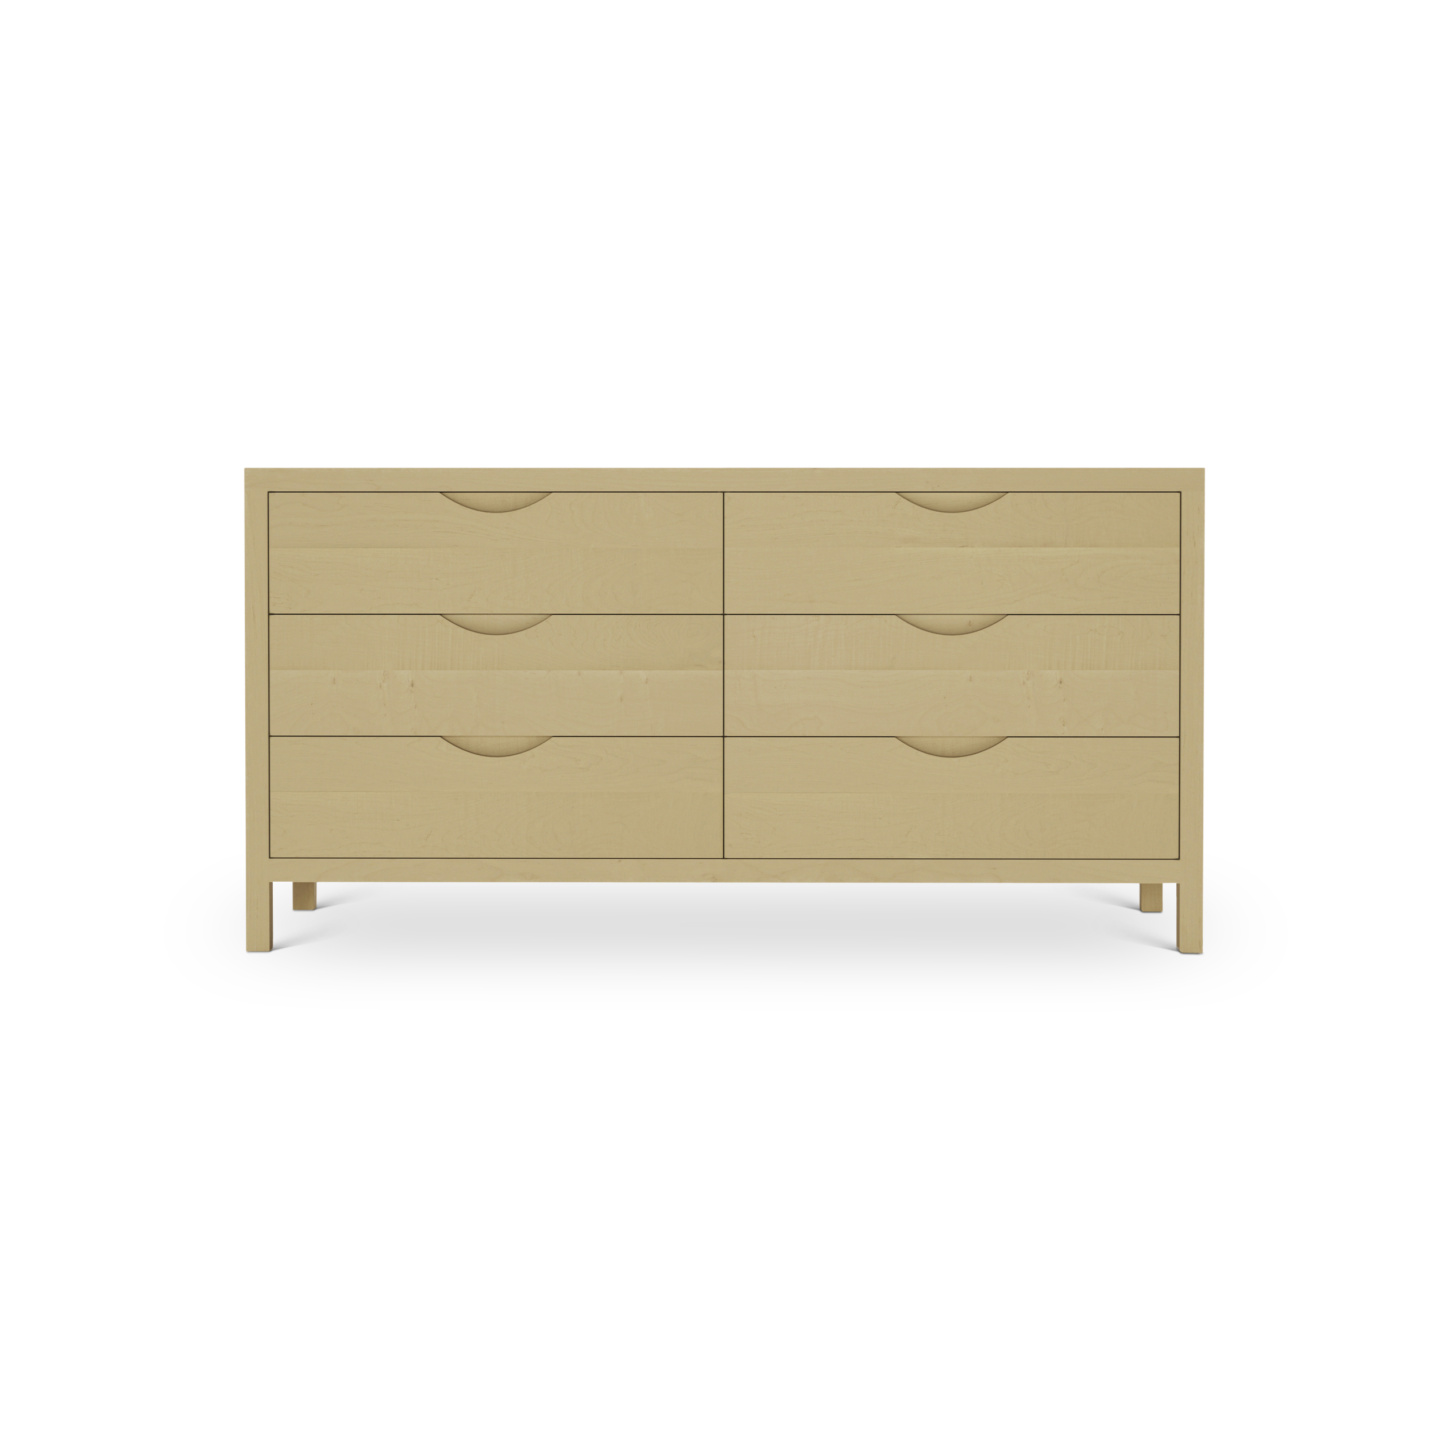 6 drawer 60" Scandinavian maple wood dresser